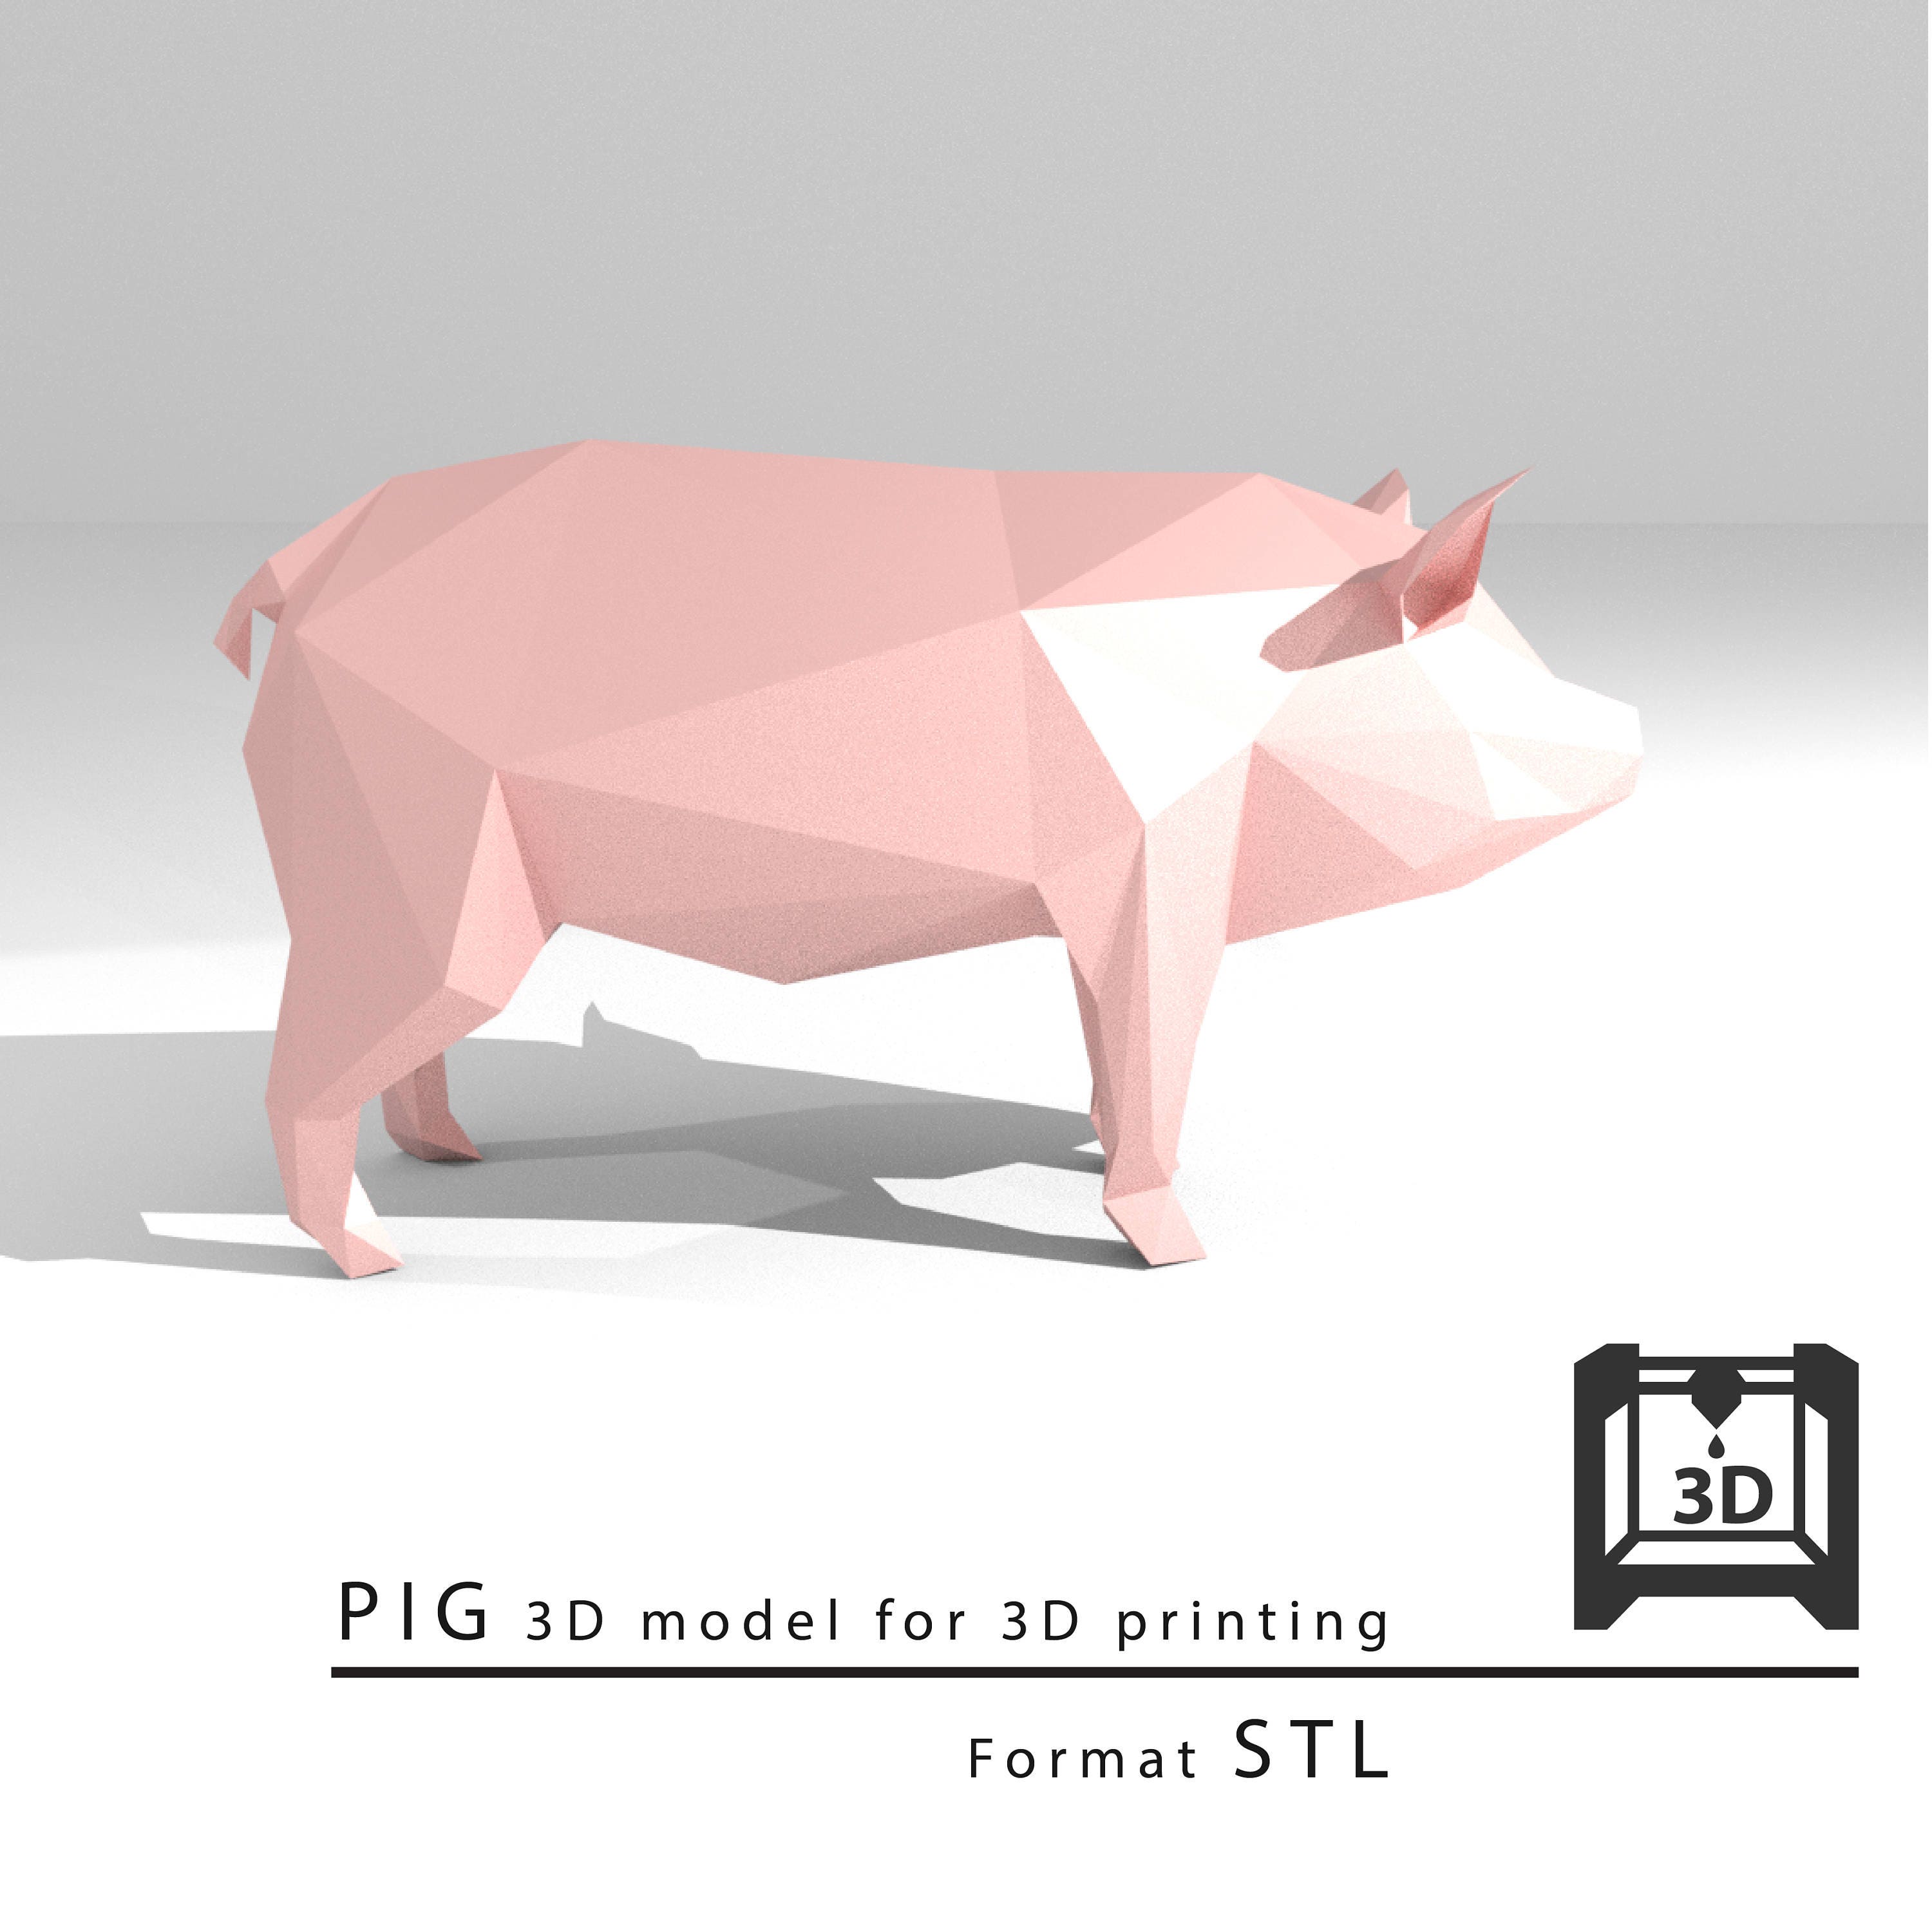 Mudret Indrømme kyst Pig 3D Model for 3D Printing. Format STL - Etsy